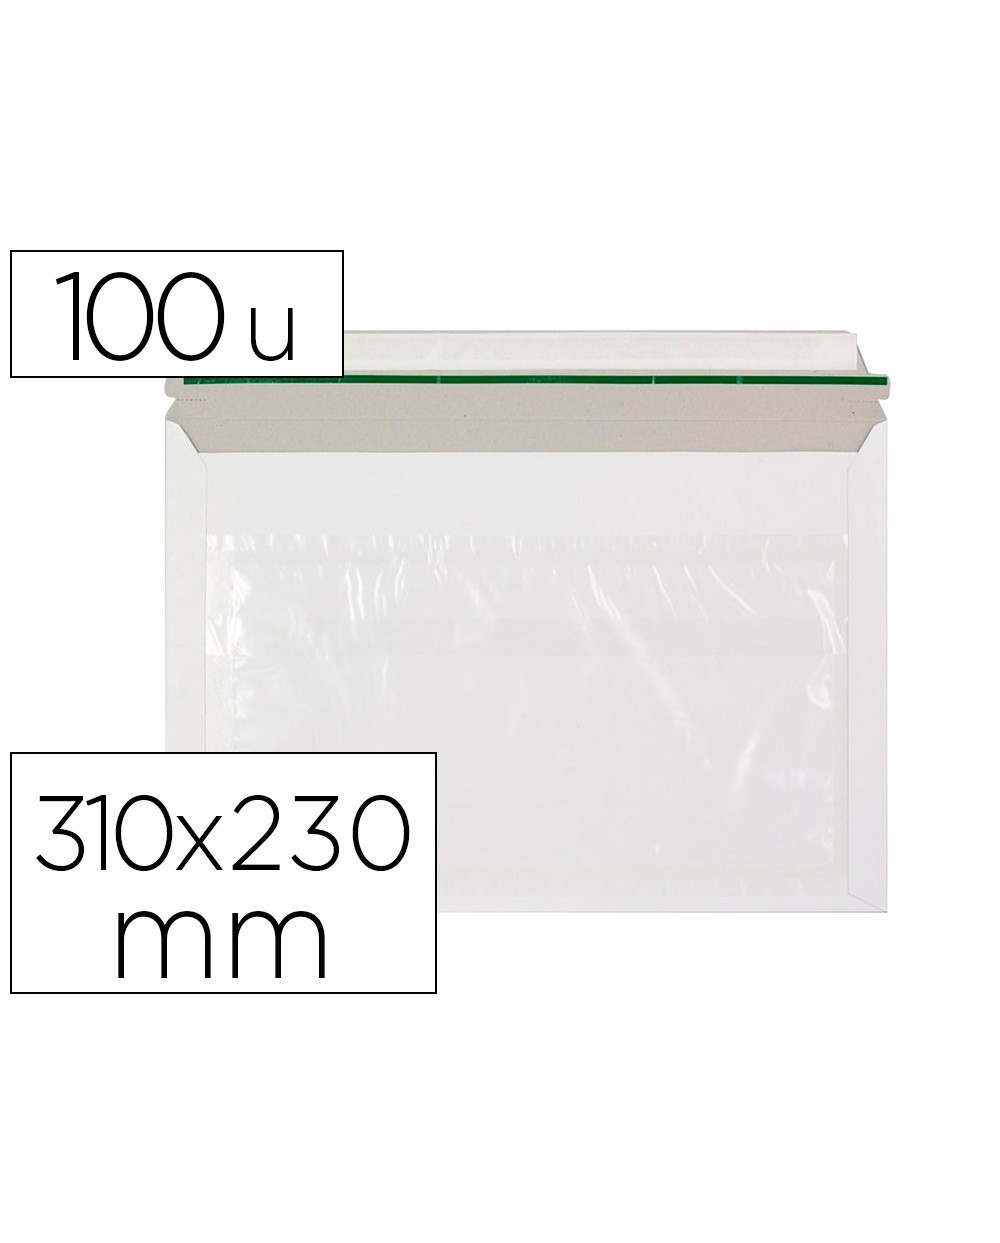 Sobre autoadhesivo q connect portadocumentos 310x230 mm ventana transparente paquete de 100 unidades